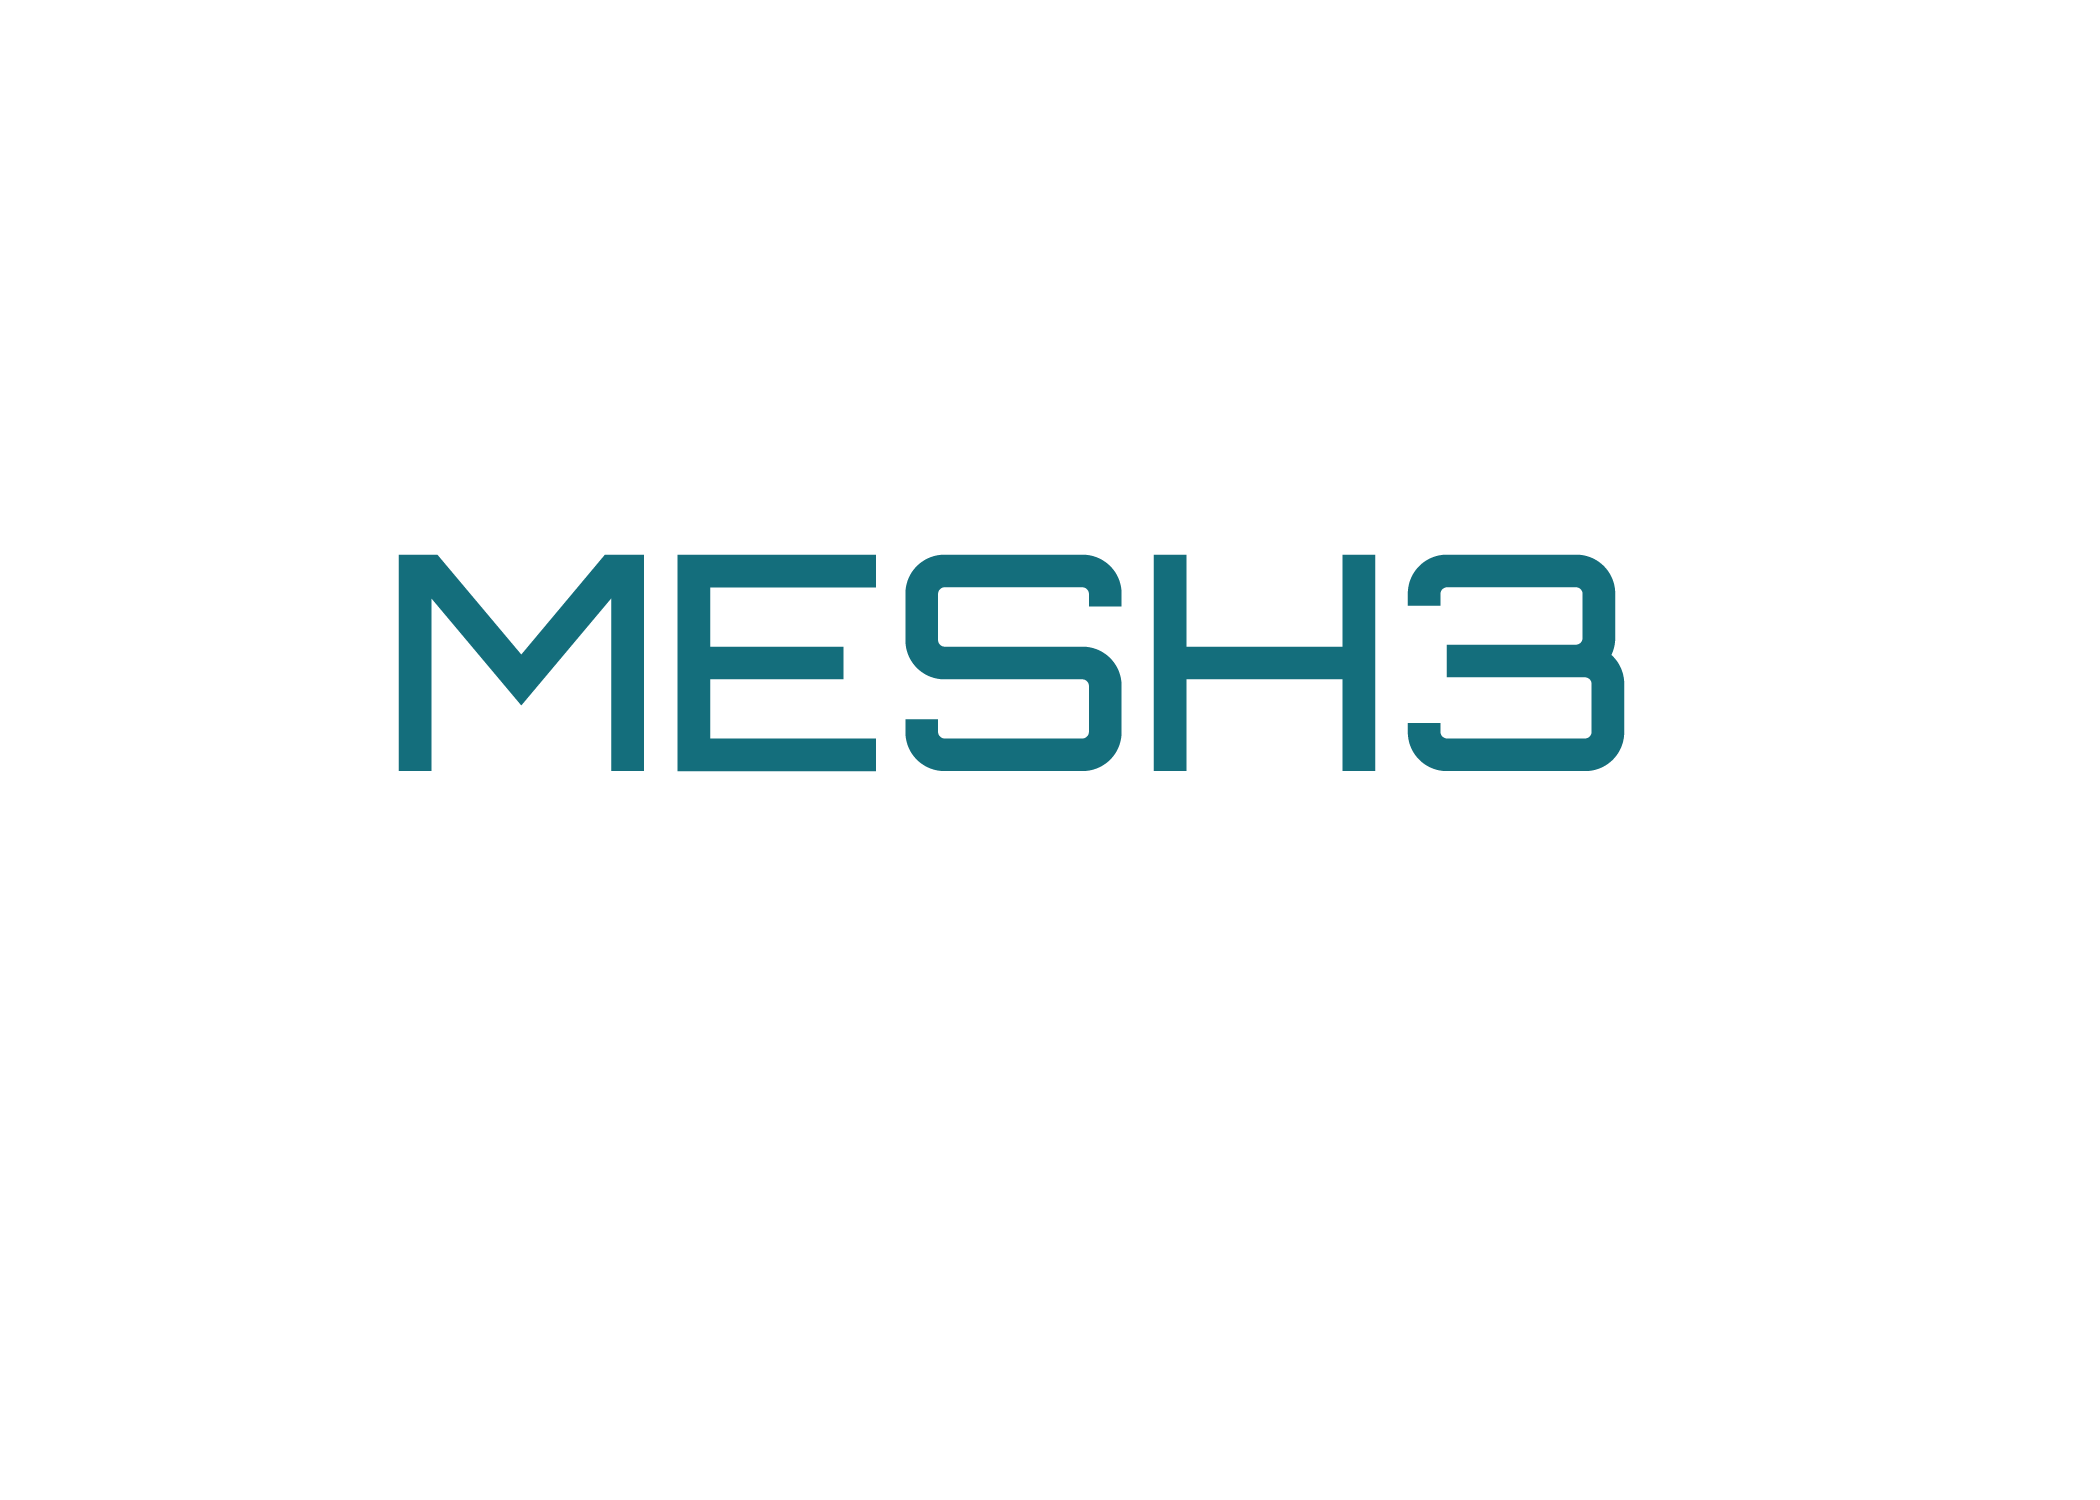 MESH3